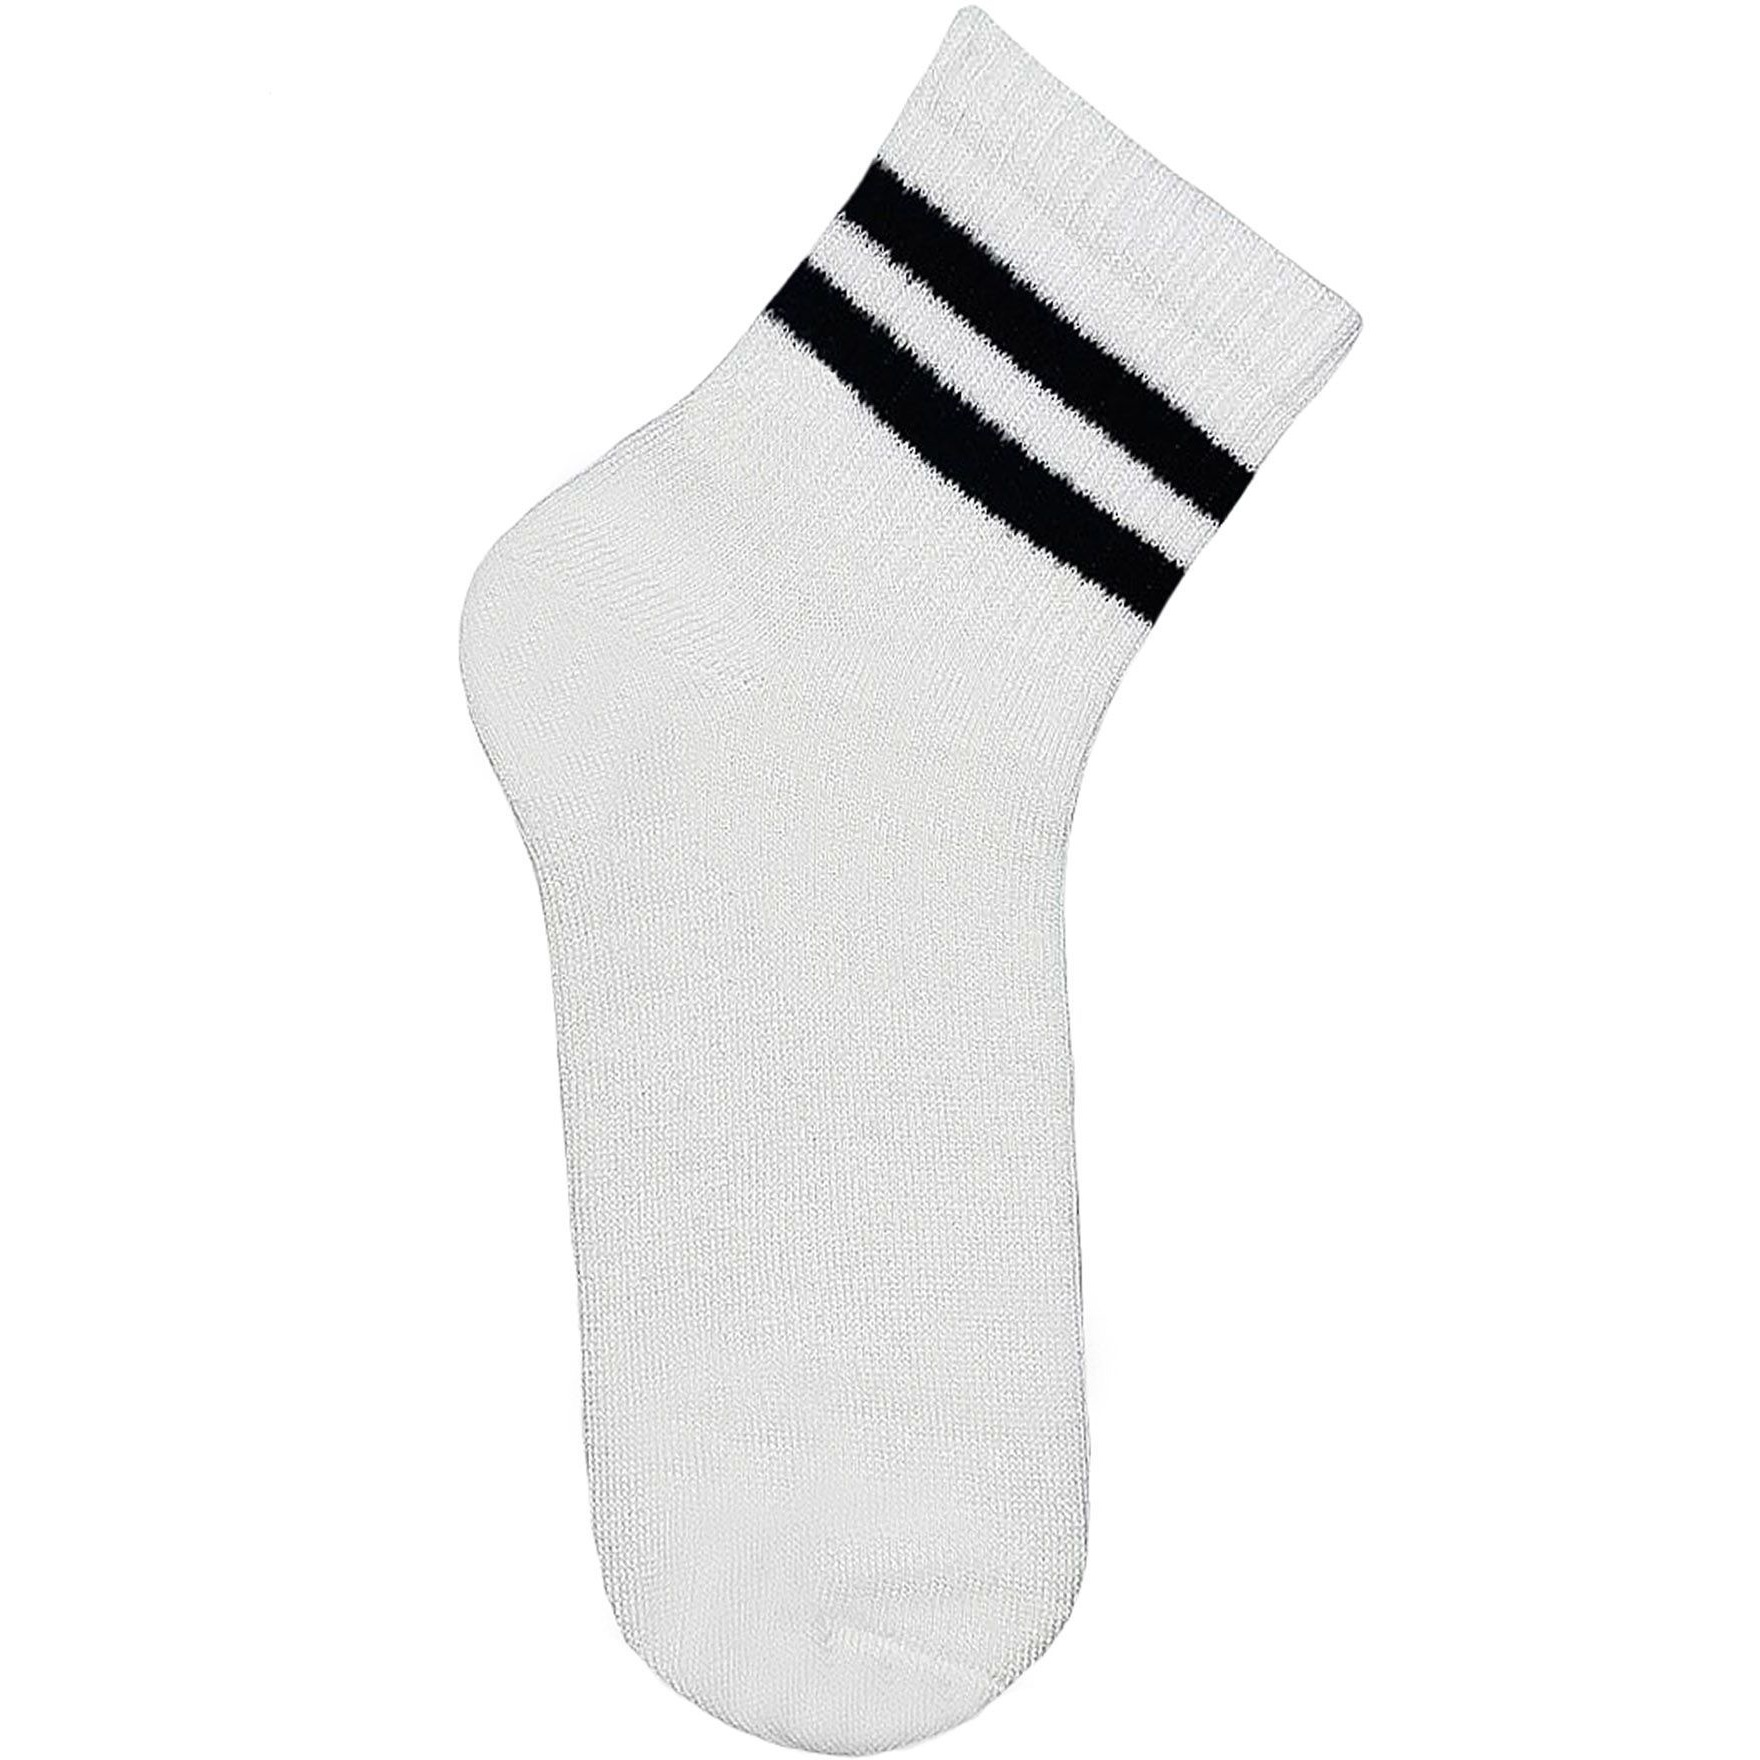 Носки детские Premier Socks 18-20 1 пара белые с черными полосками (4820163320076) фото 1